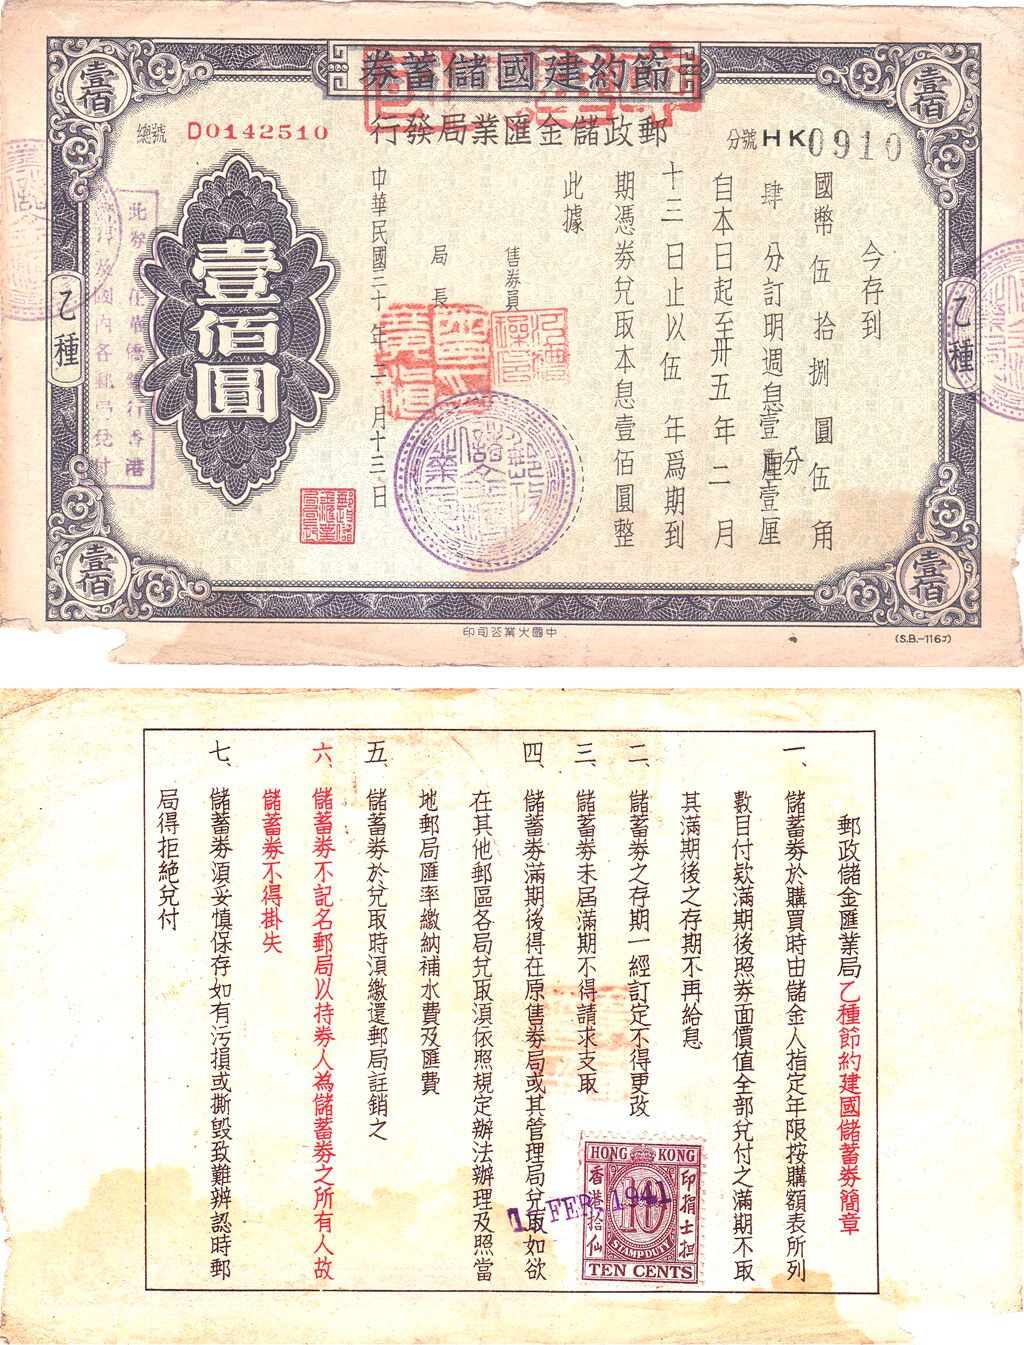 B3355, China Reconstruction Bond, 100 Dollars, Post Saving Bank 1941 Hong Kong Issue